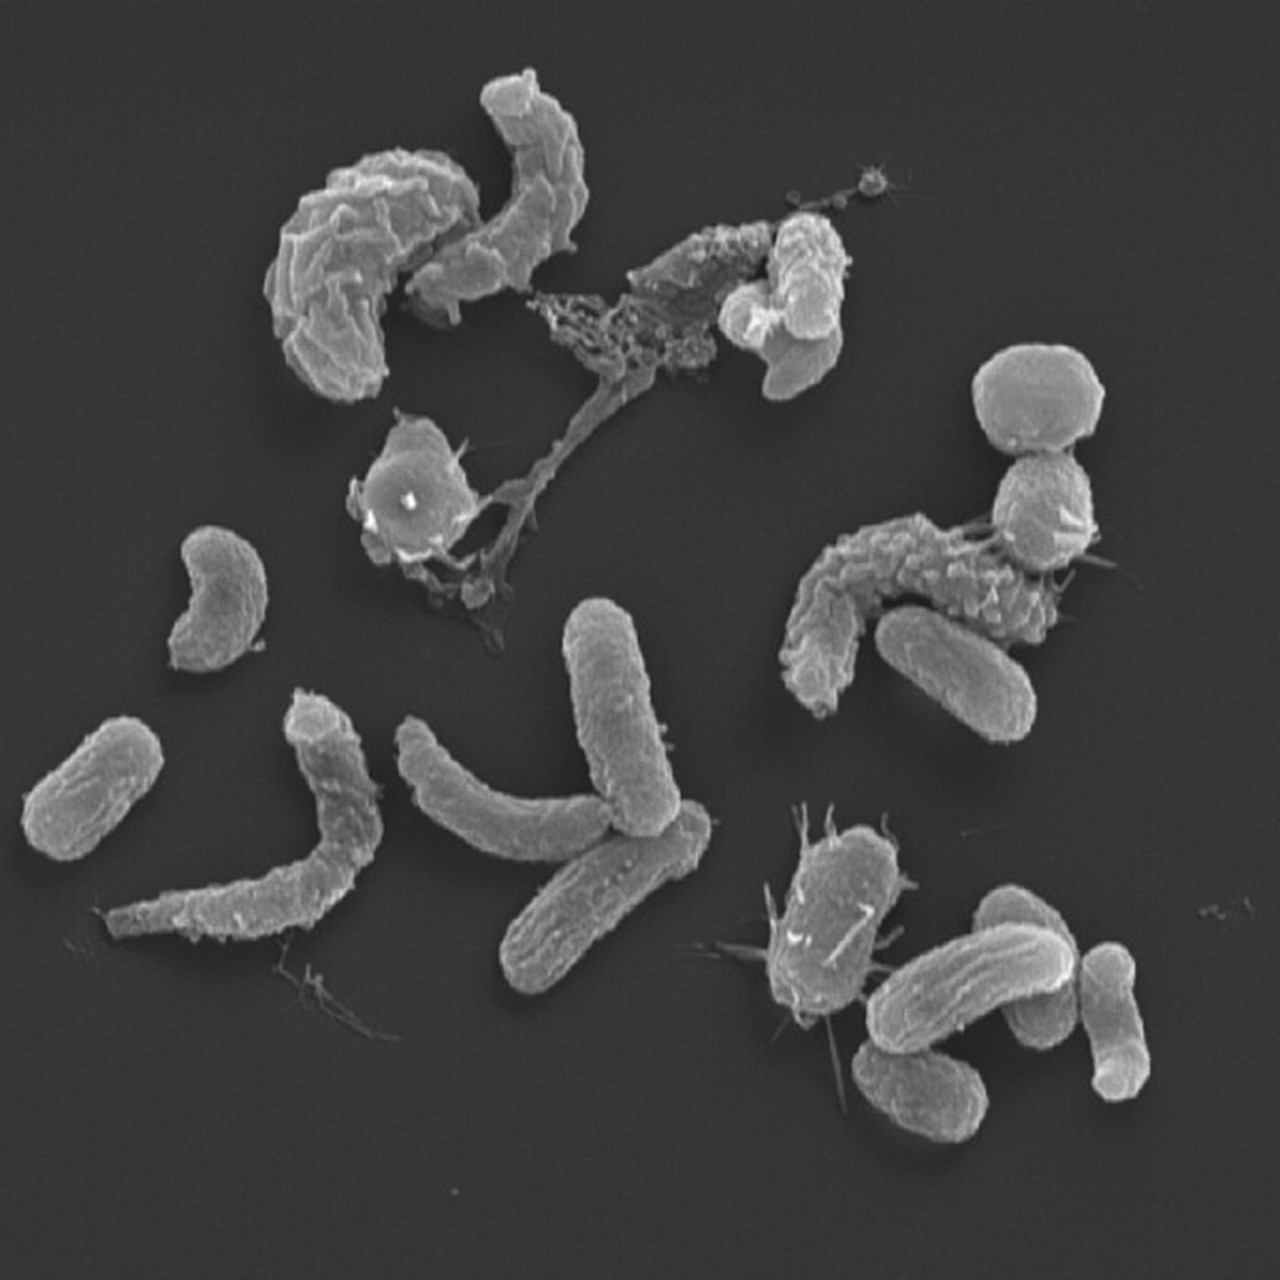 bakterier i extremförstoring som ser ut som böjda och raka korvar med utskott